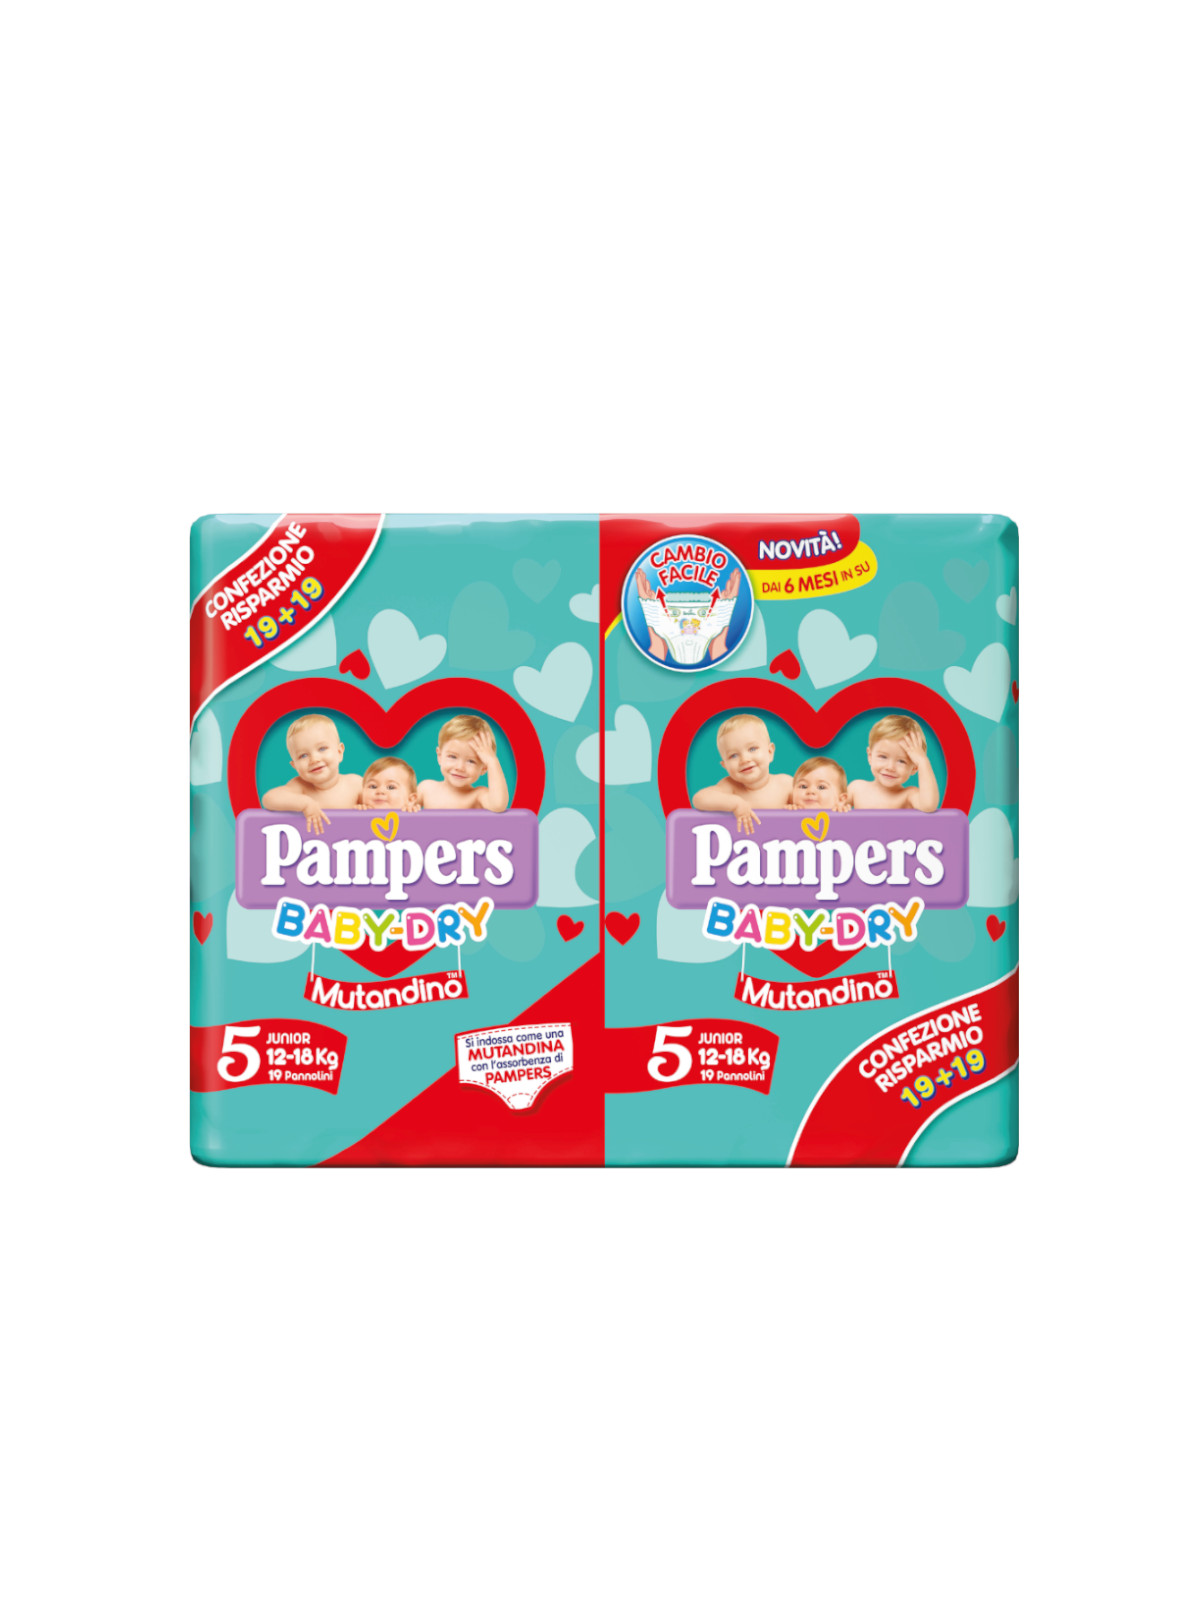 Pampers Baby Dry Mutandino Junior Taglia 5 (12-18 Kg)- 38 pz - rc -  Bimbostore